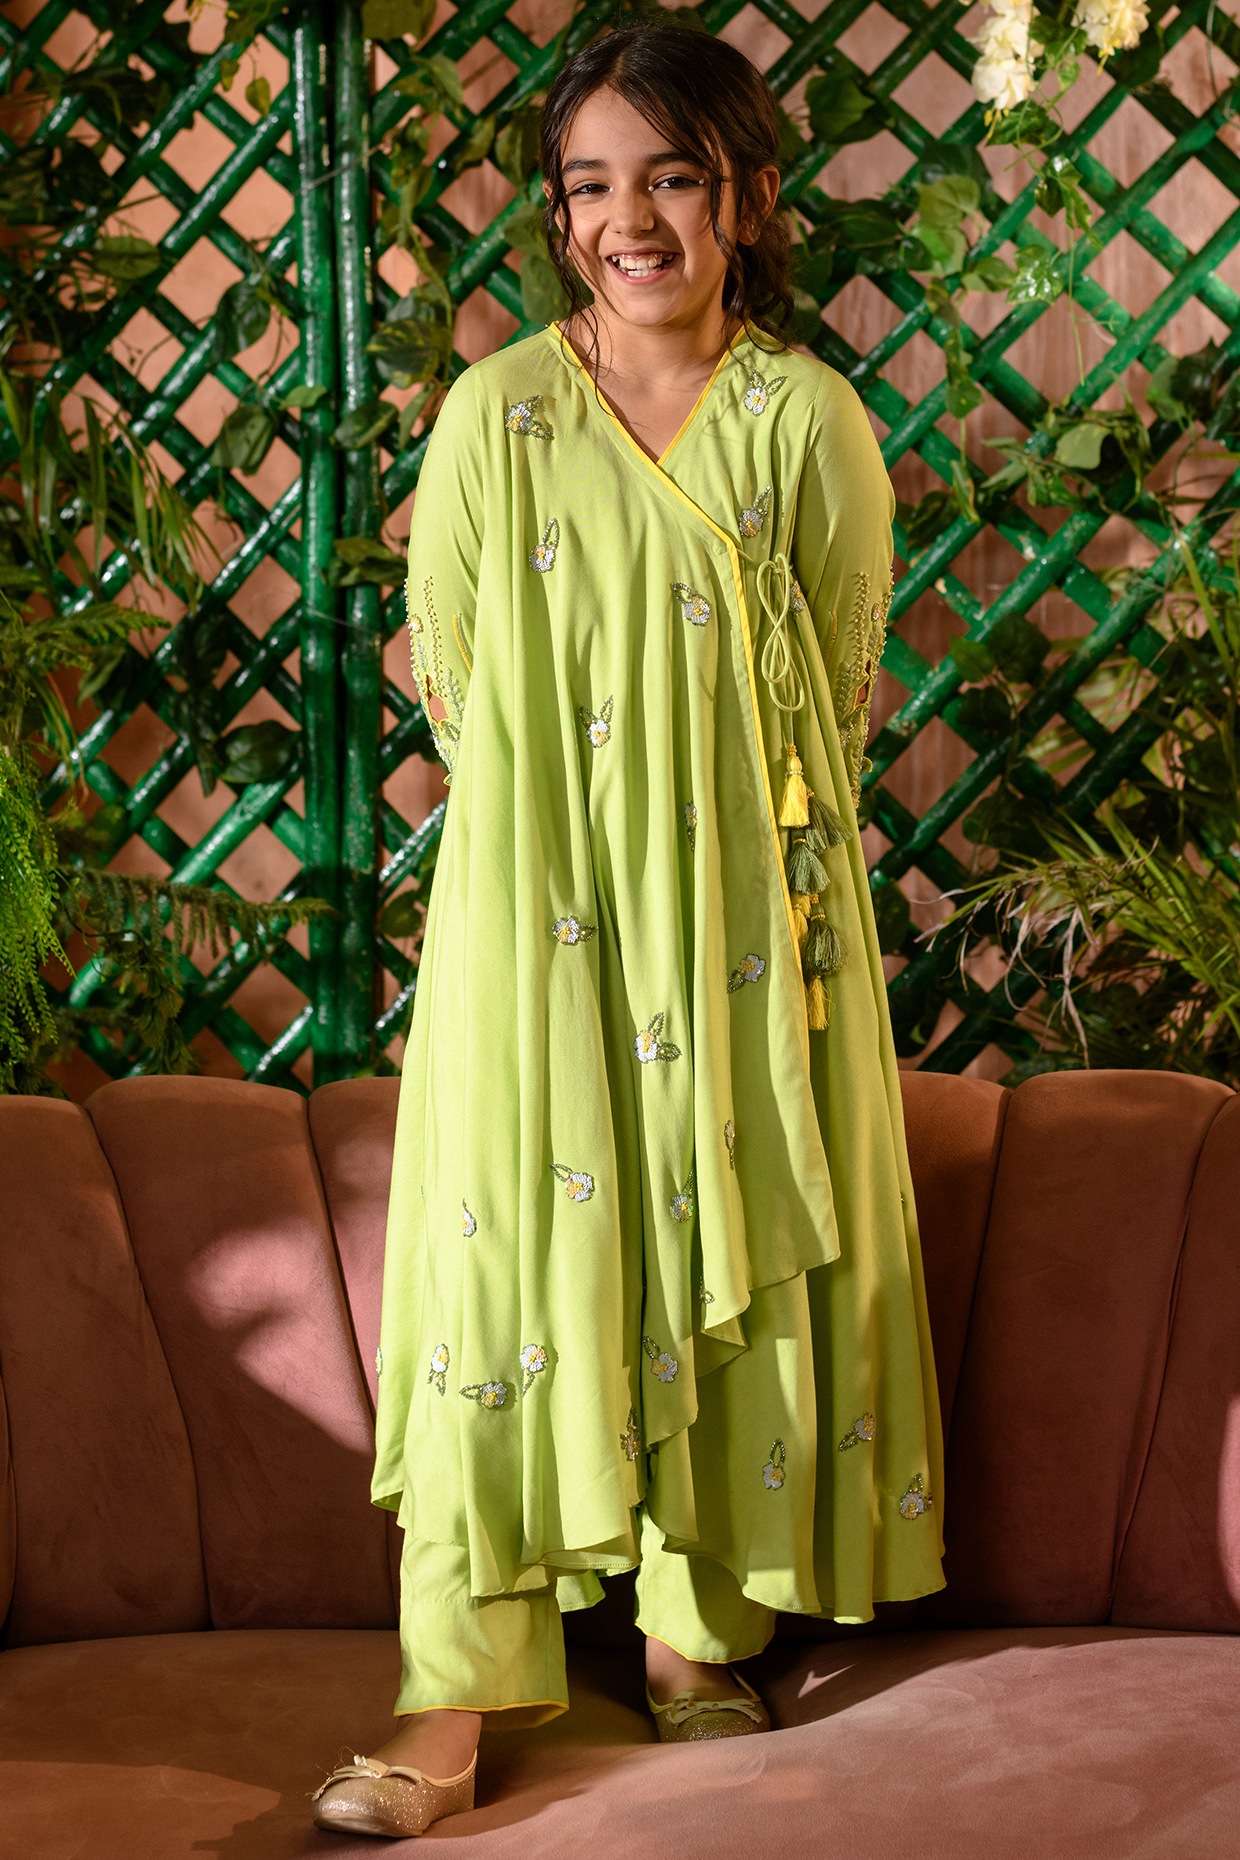 Buy Girls Patiala Suit Online With Jacket – MummaGoose